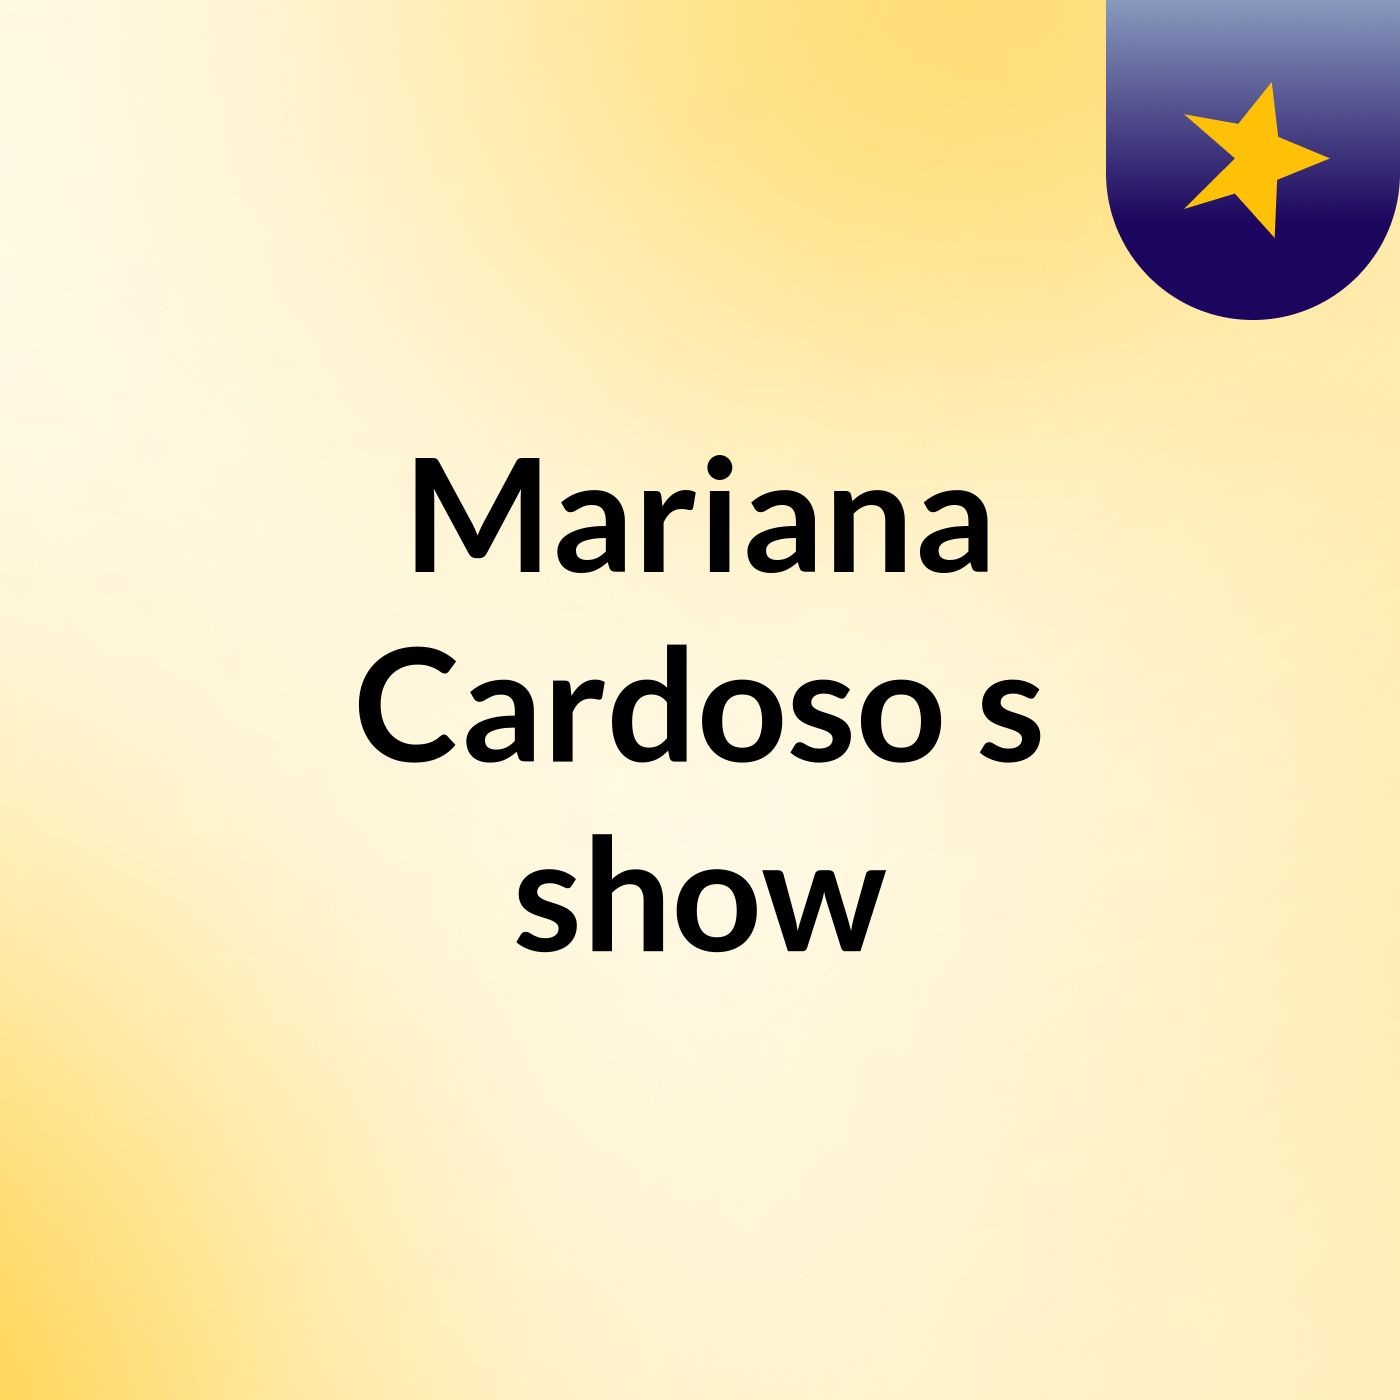 Mariana Cardoso's show